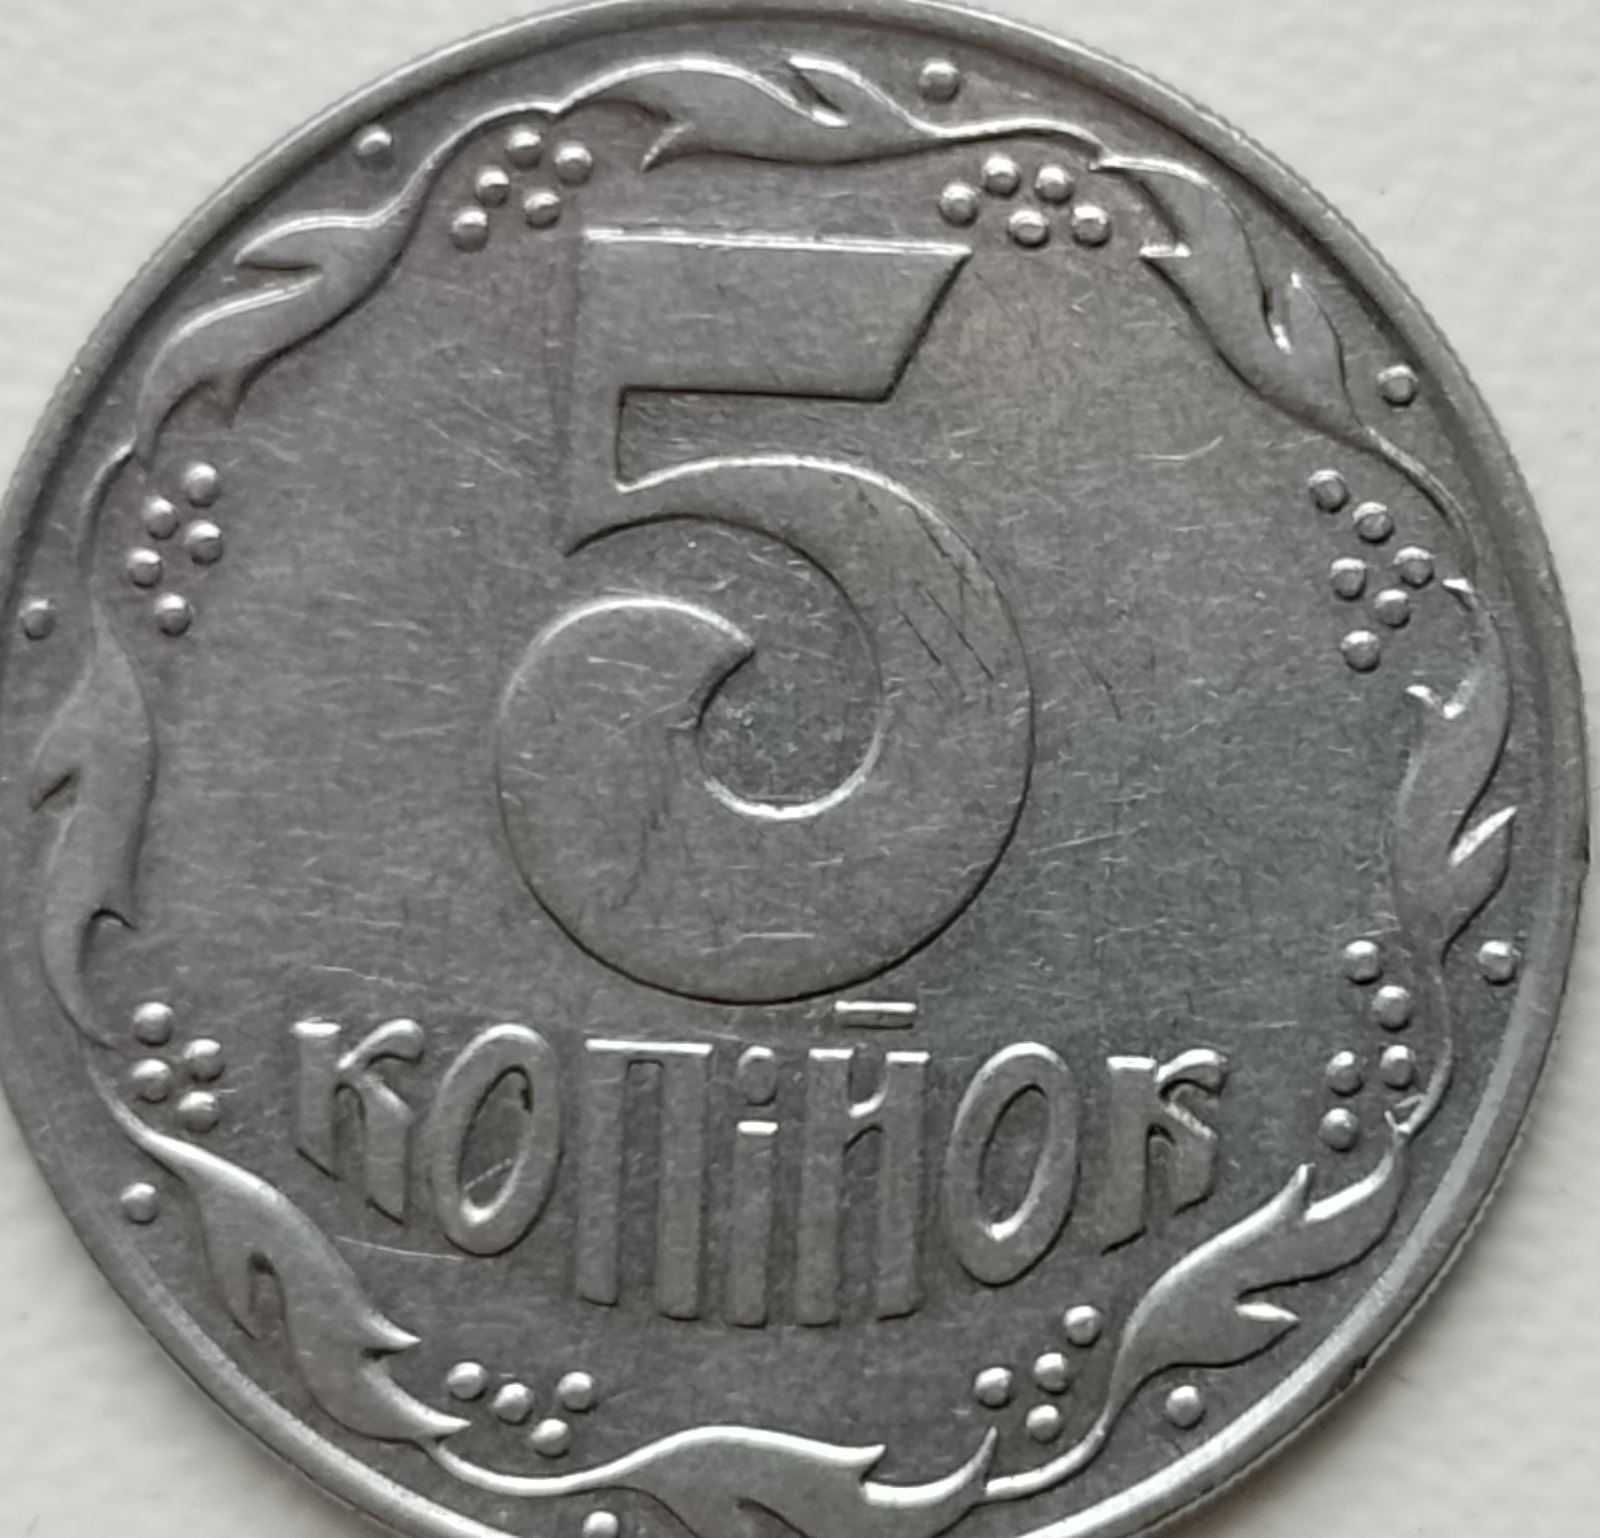 5 копійок 1992 року - обігова монета України.